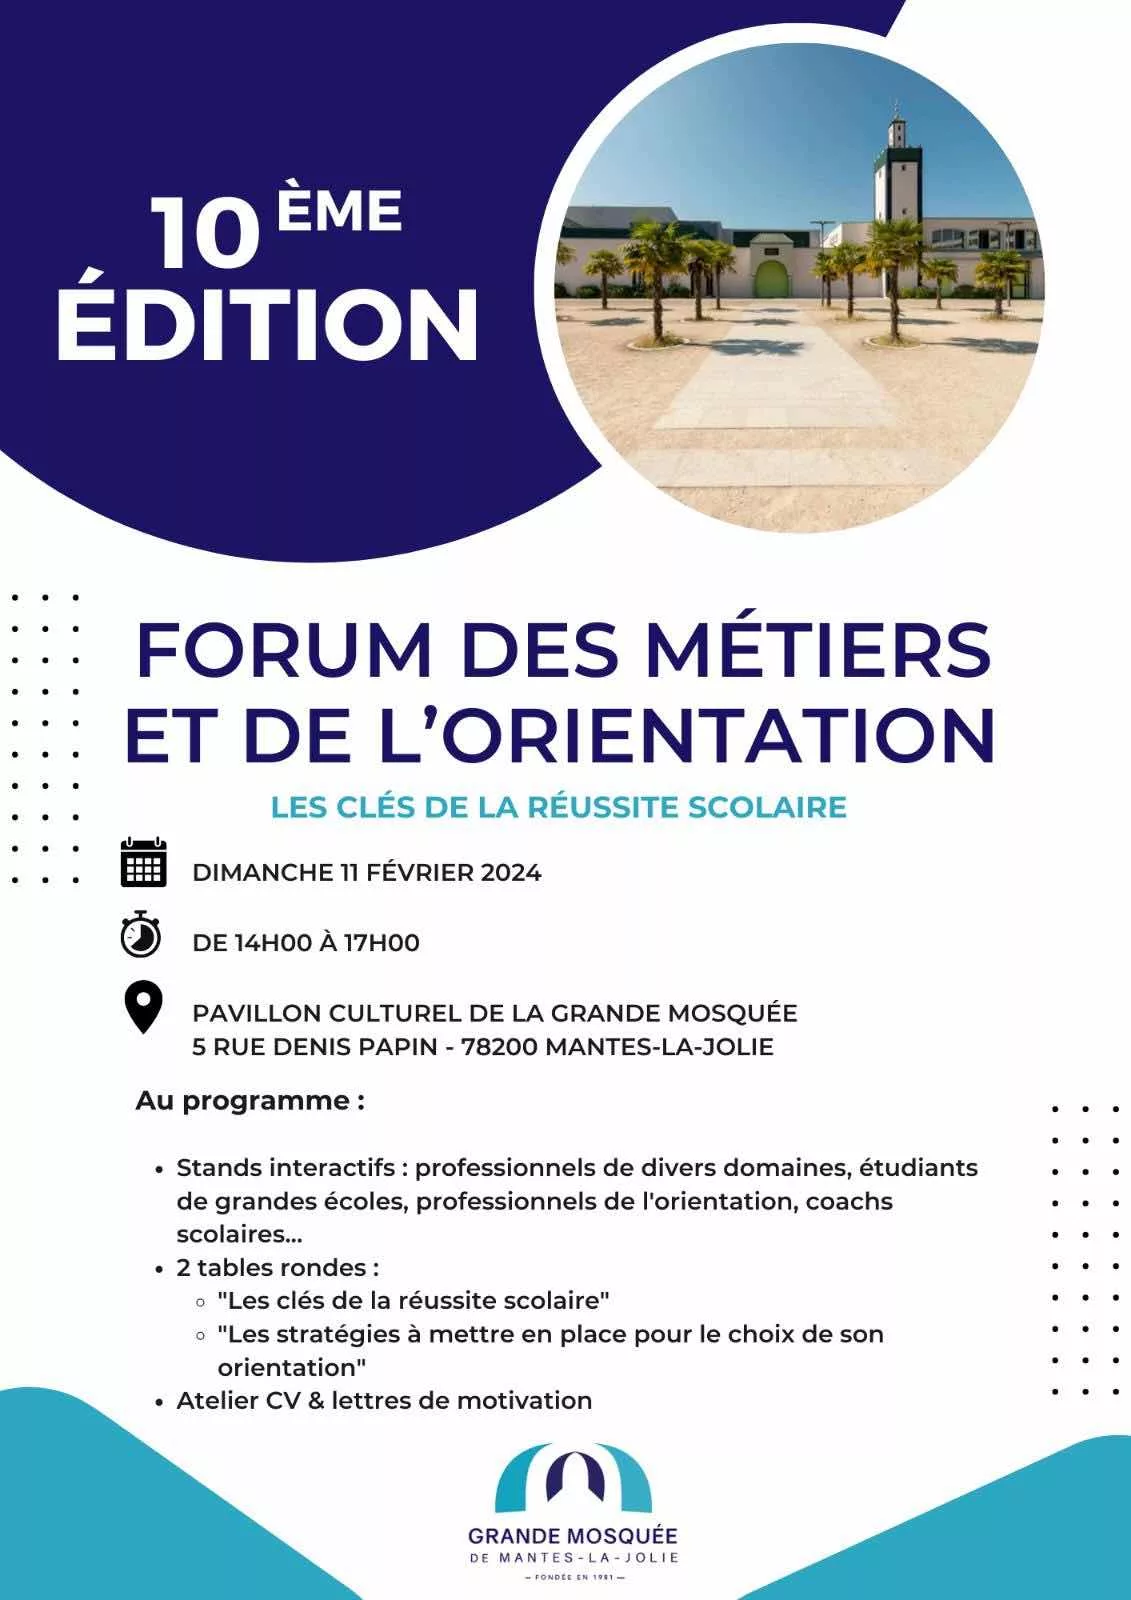 Forum des métiers et de l'orientation à la mosquée de Mantes-la-Jolie